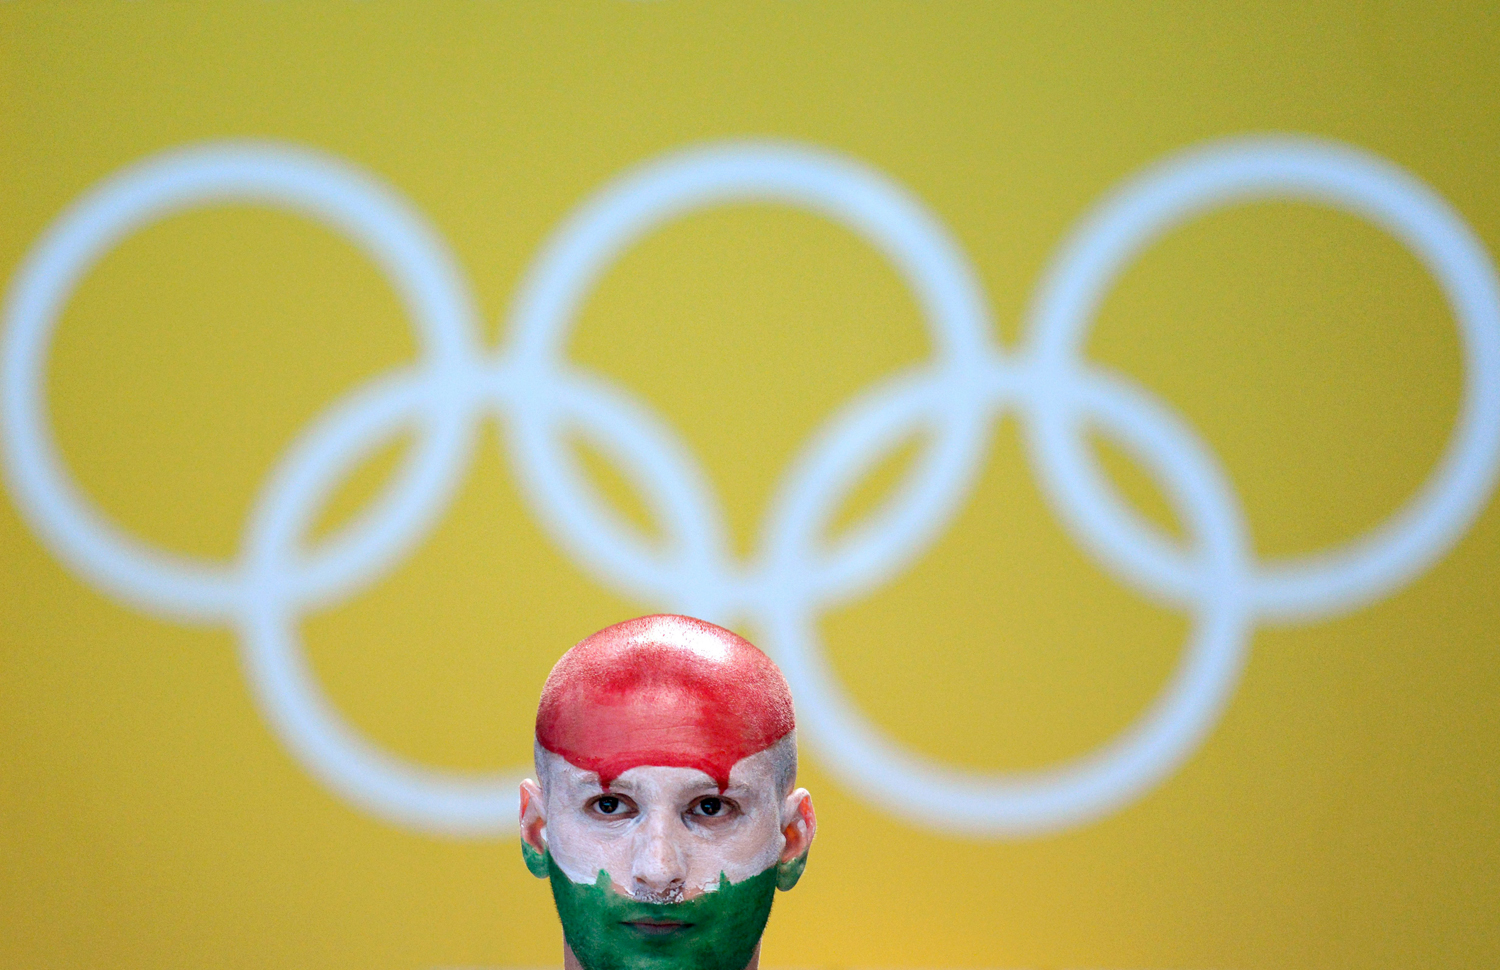 Magyar szurkoló a londoni olimpia vízilabda-tornáján